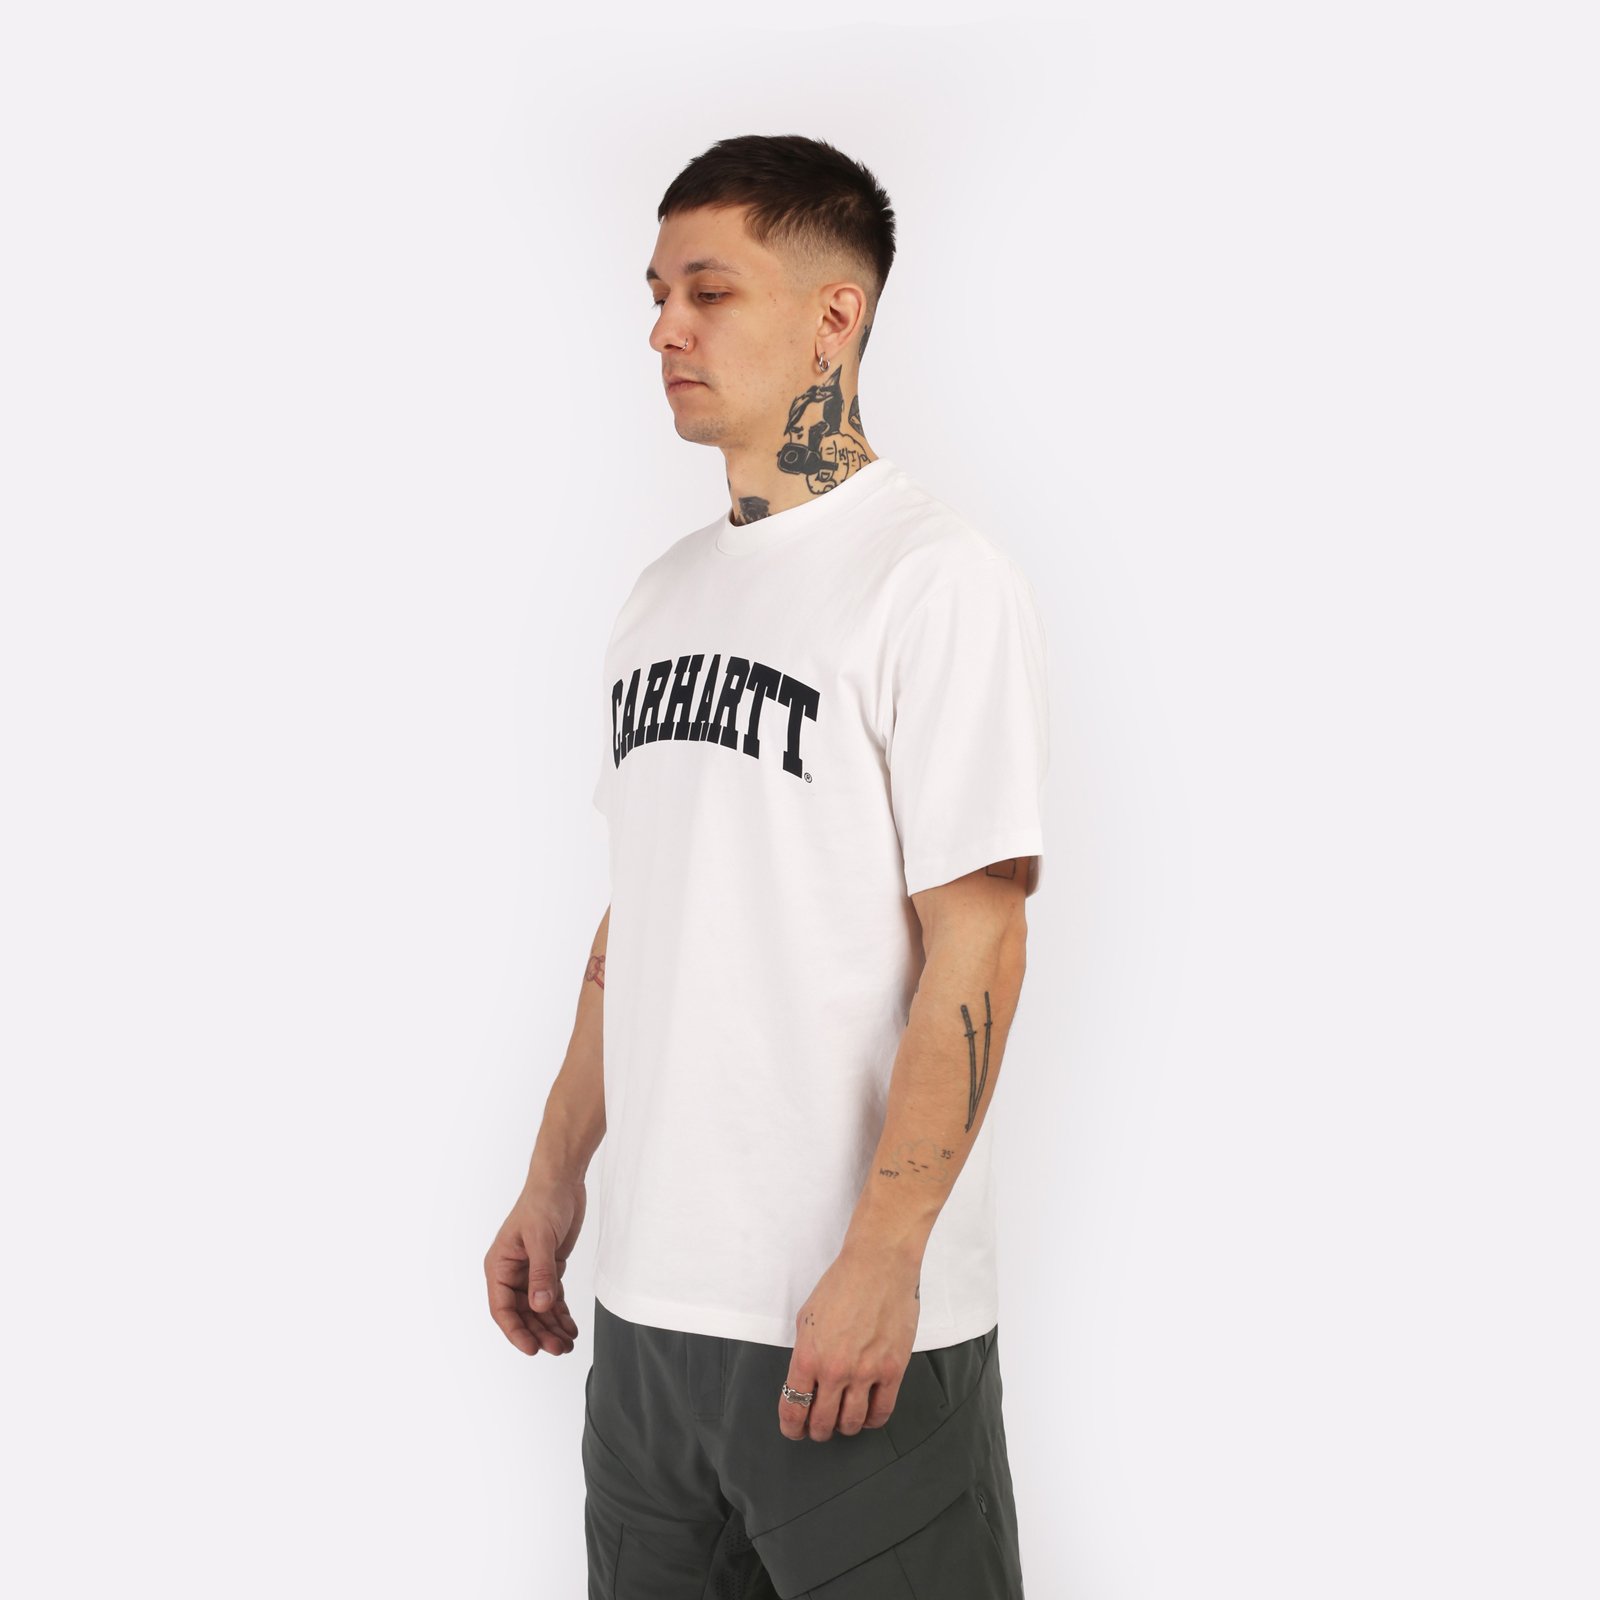 мужская футболка Carhartt WIP S/S University T-Shirt  (I028990-white/black)  - цена, описание, фото 3